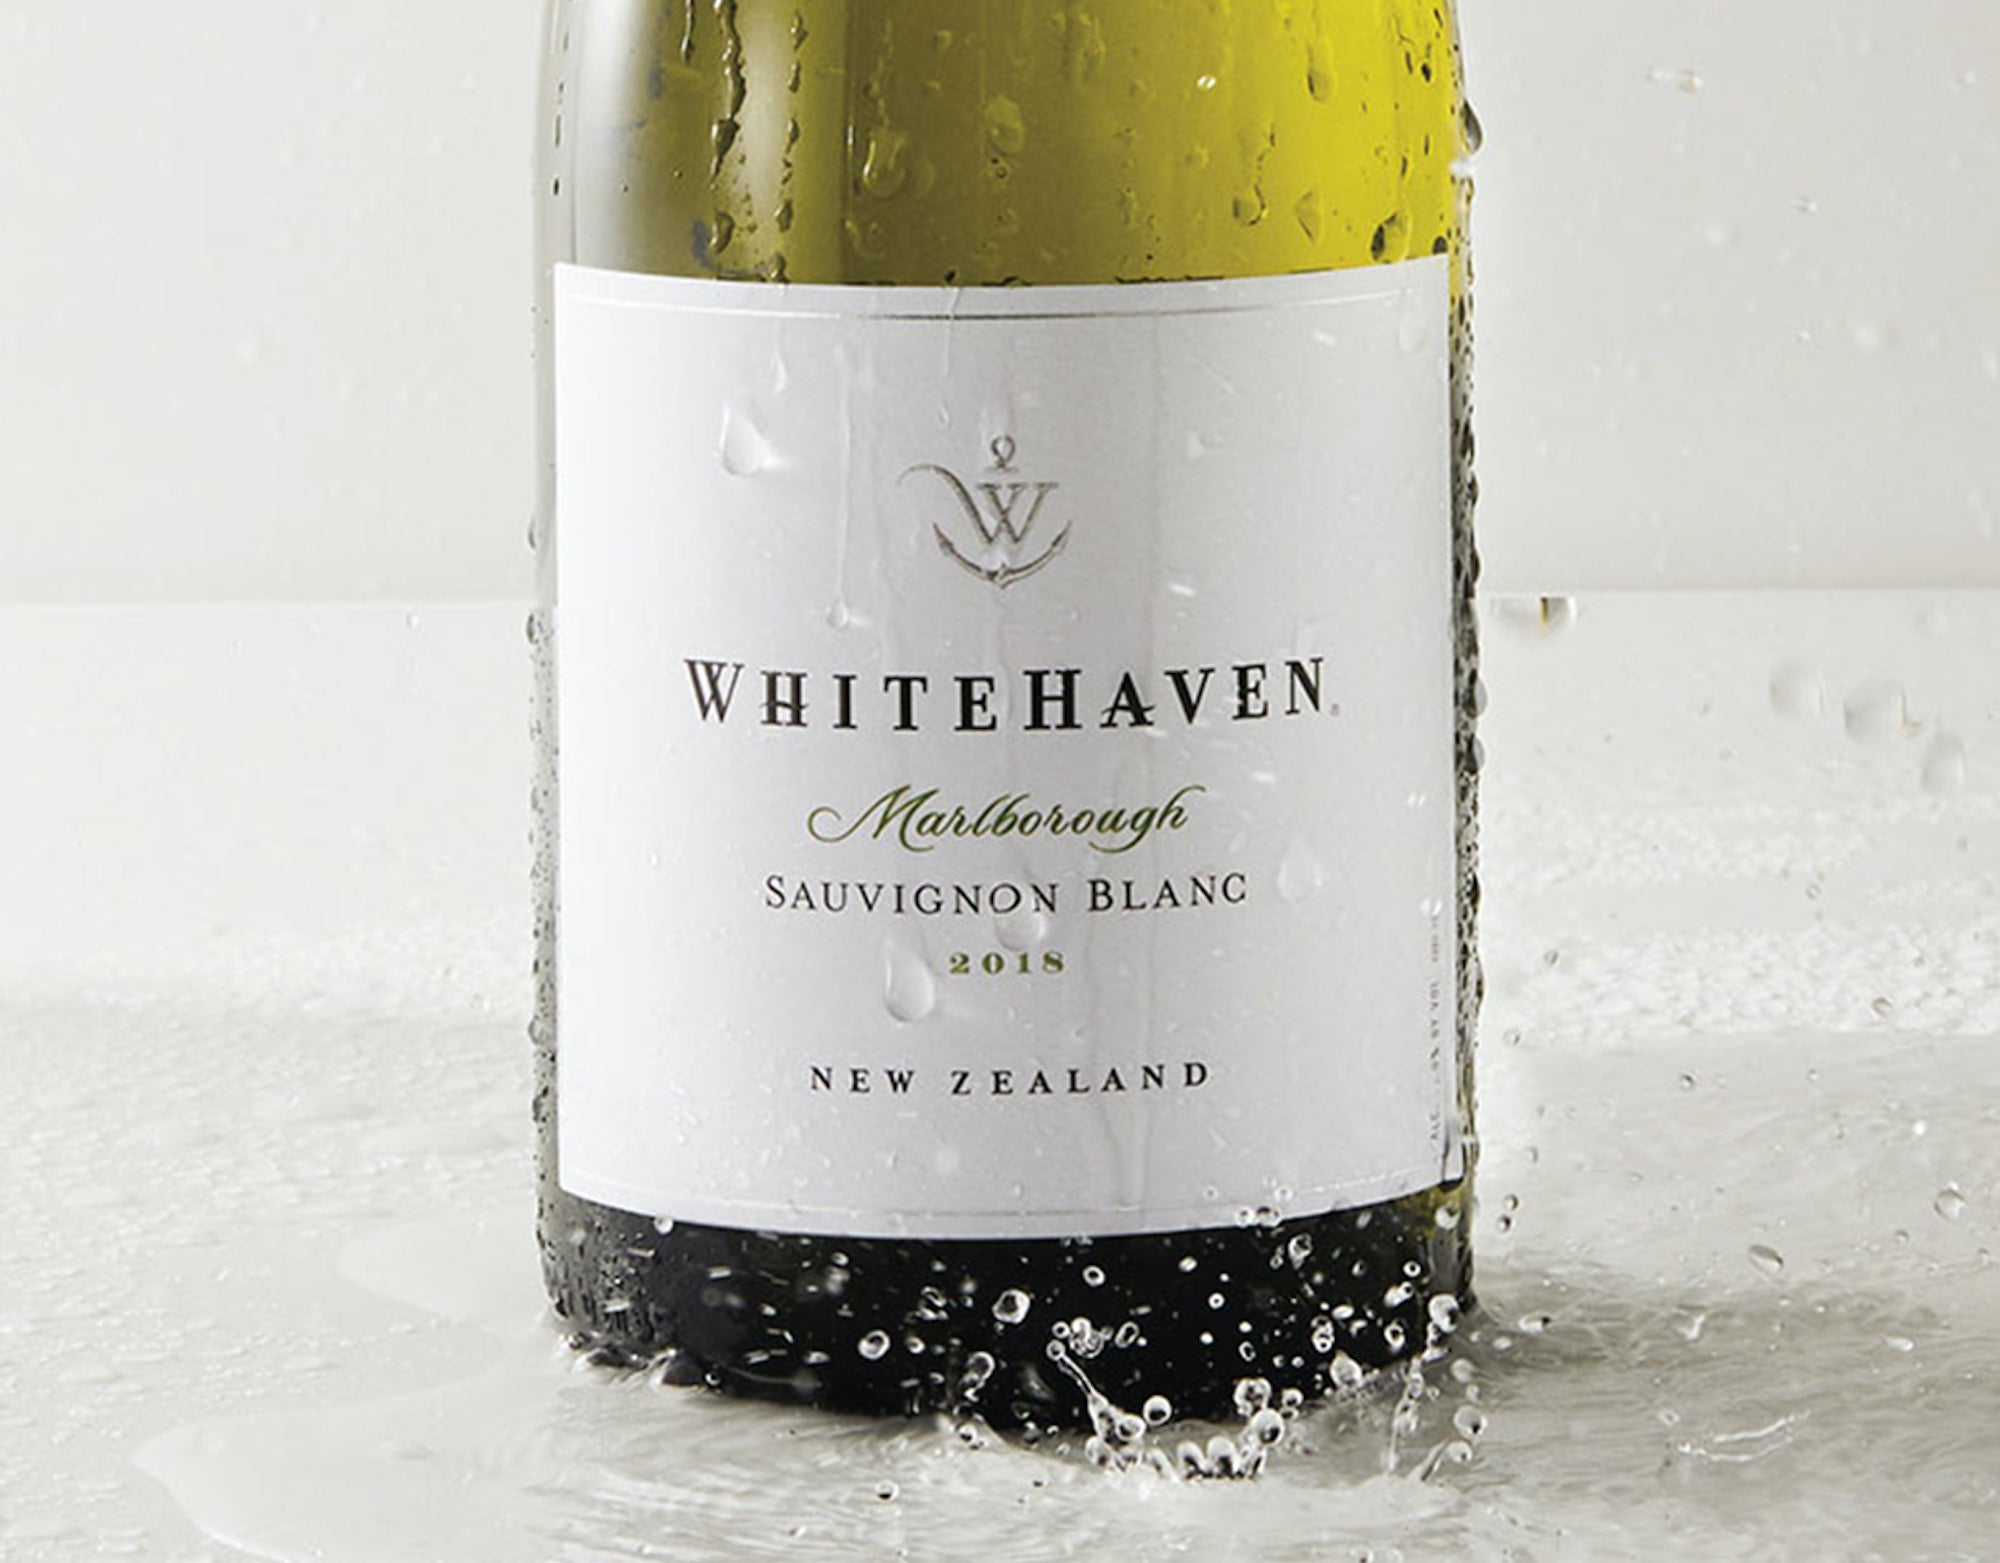 Whitehaven Marlborough Sauvignon Blanc